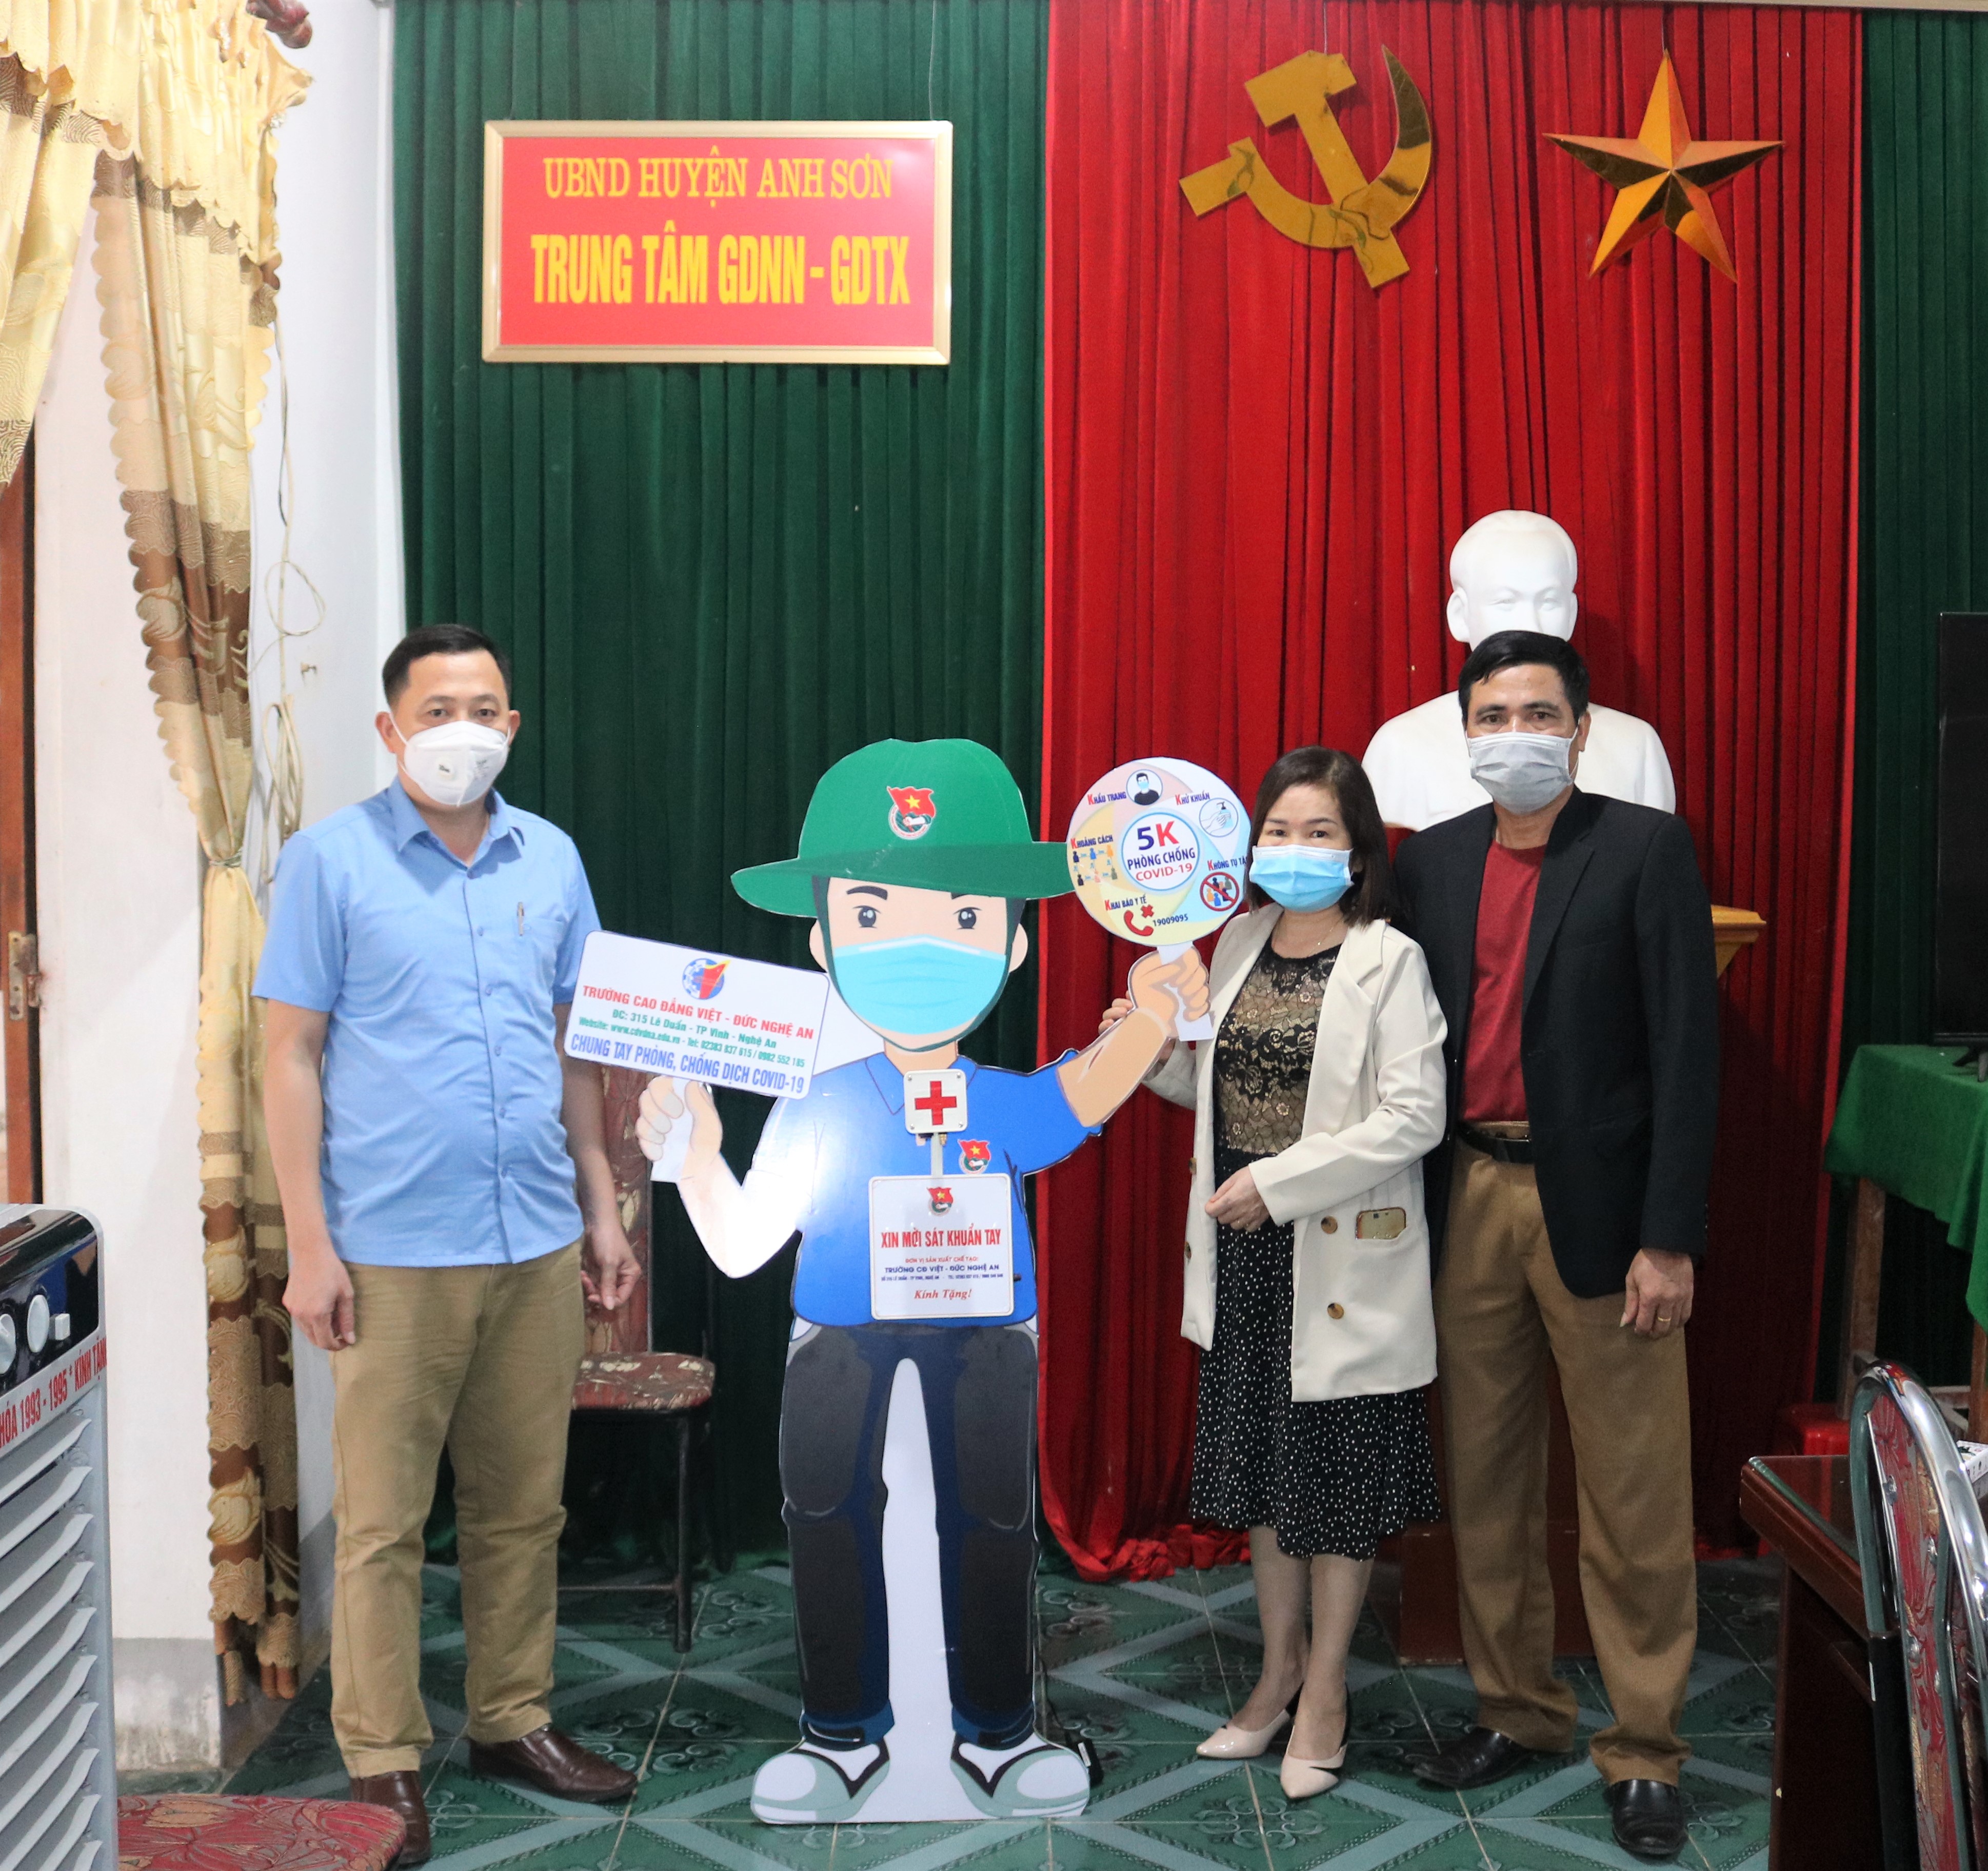 Trường Cao đẳng Việt – Đức Nghệ An tặng máy Rửa tay sát khuẩn tự động cho Trung tâm GDNN-GDTX huyện Anh Sơn